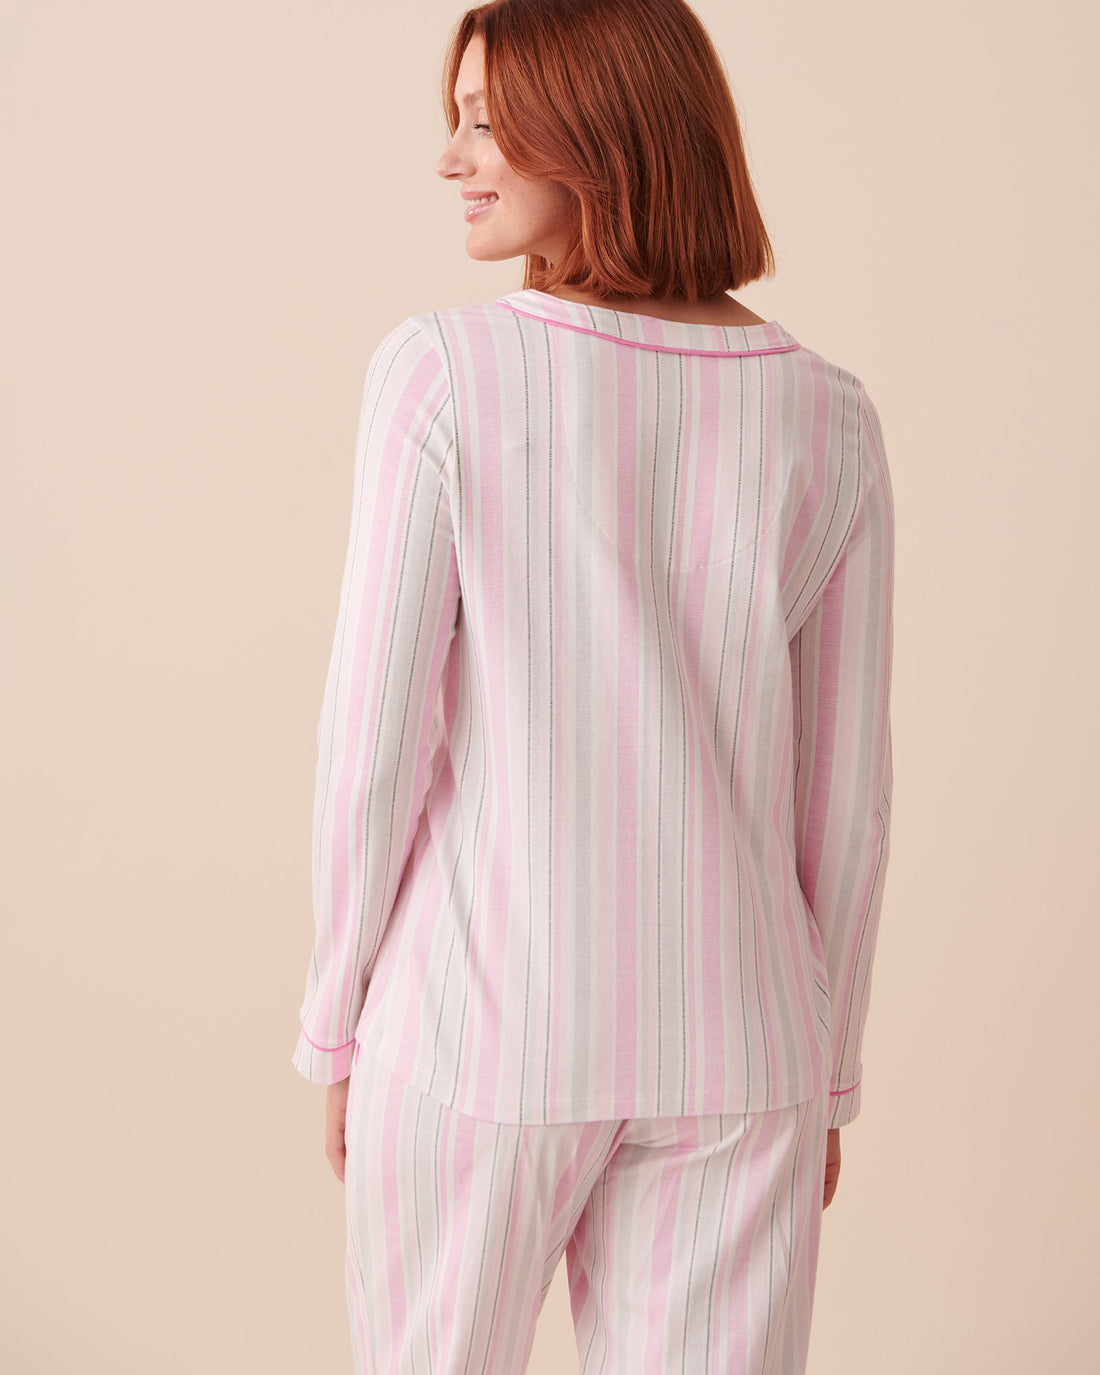 Cotton Long Sleeve Pyjama Shirt_40100524_P10357_02